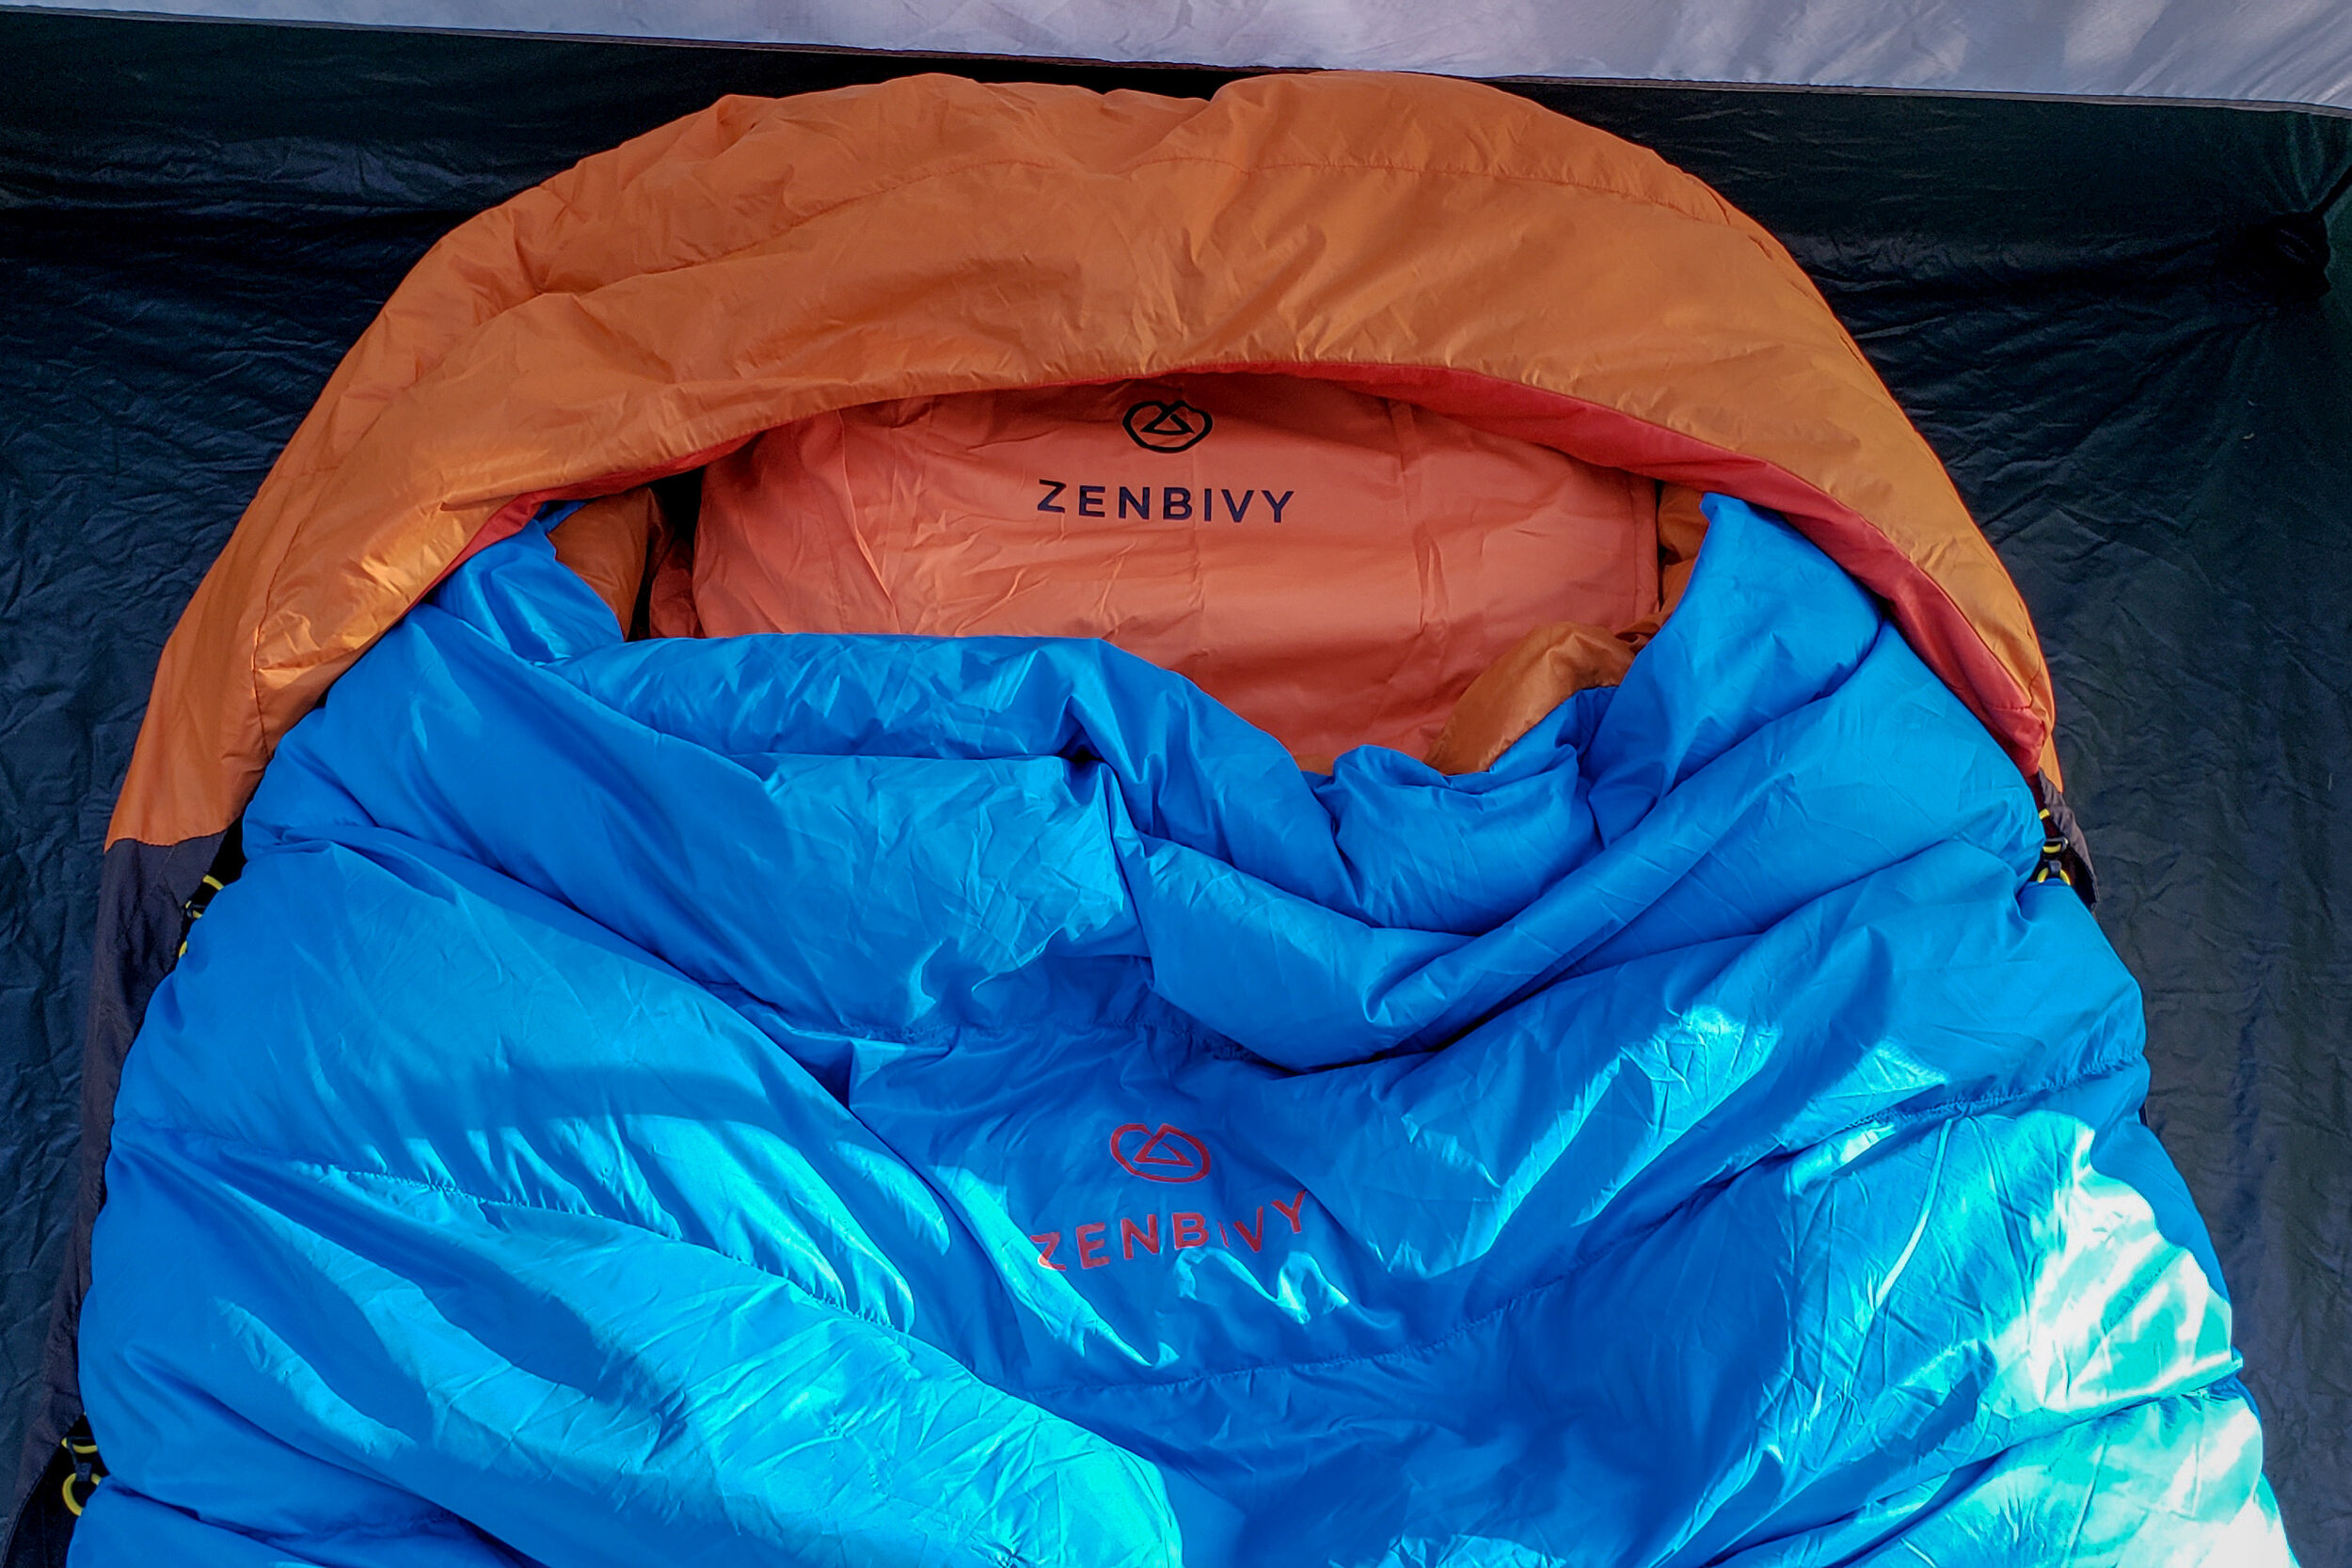 Zenbivy Light Bed Quilt System Review | CleverHiker